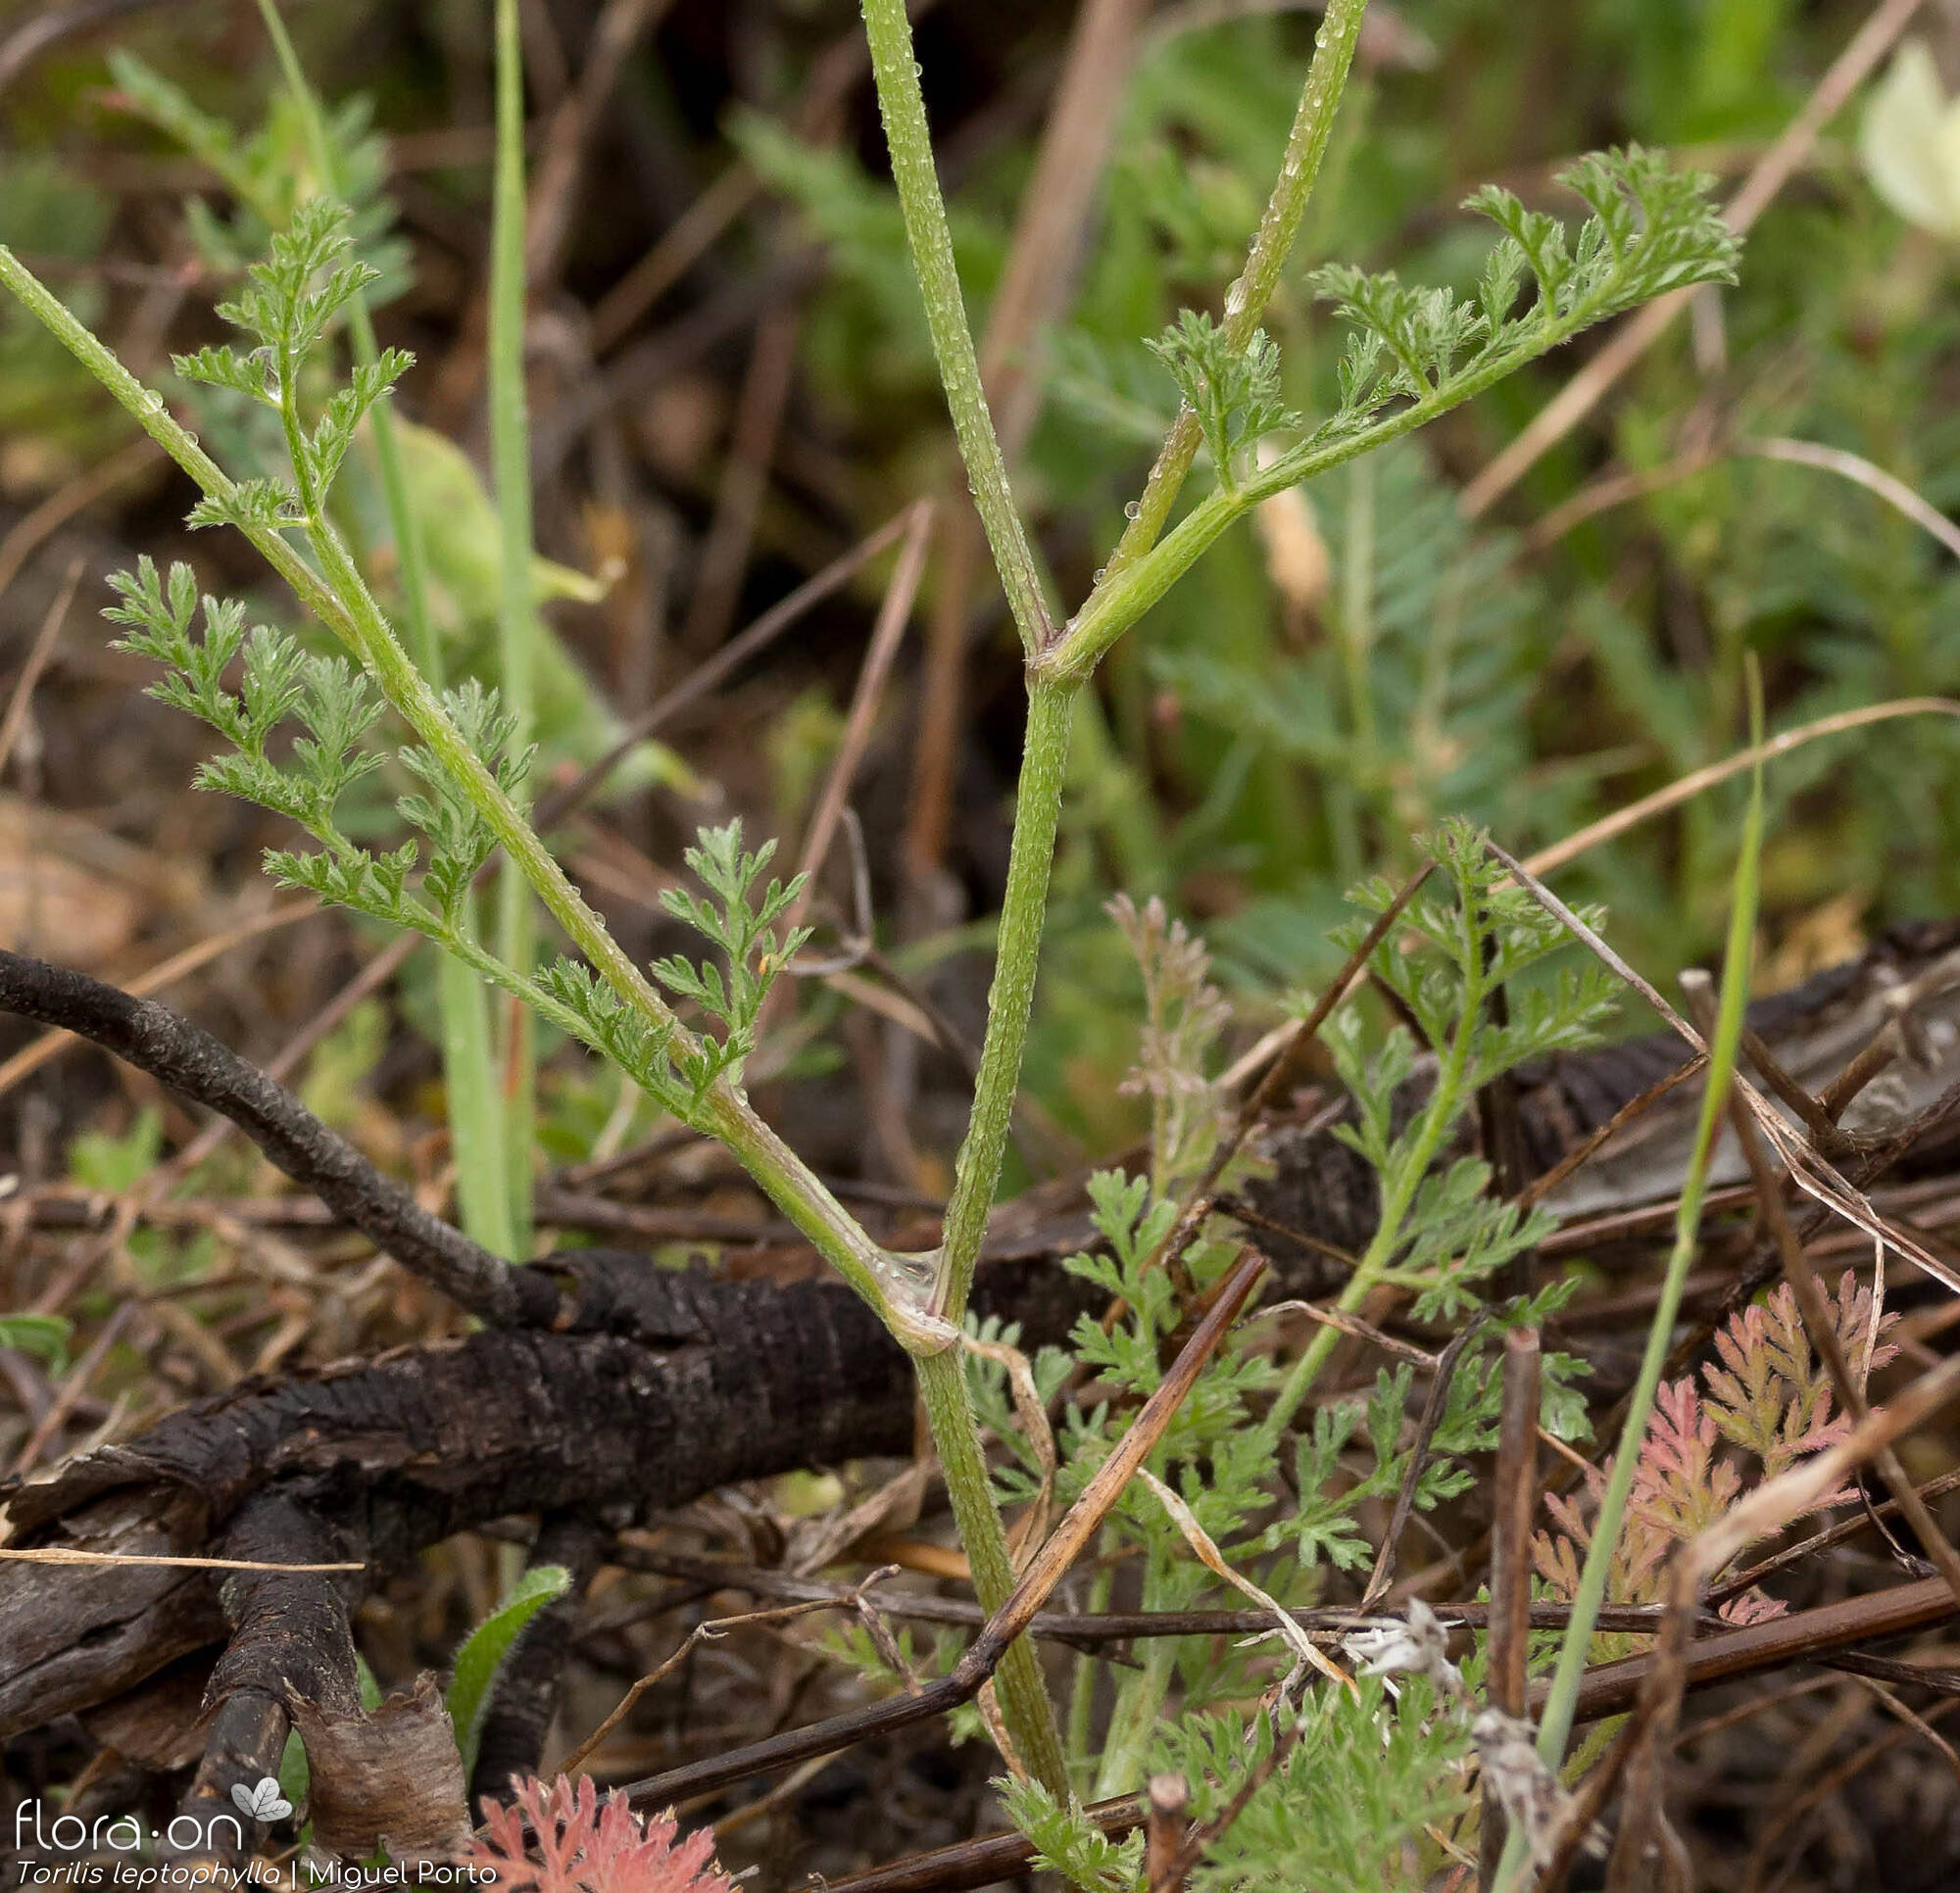 Torilis leptophylla - Folha (geral) | Miguel Porto; CC BY-NC 4.0